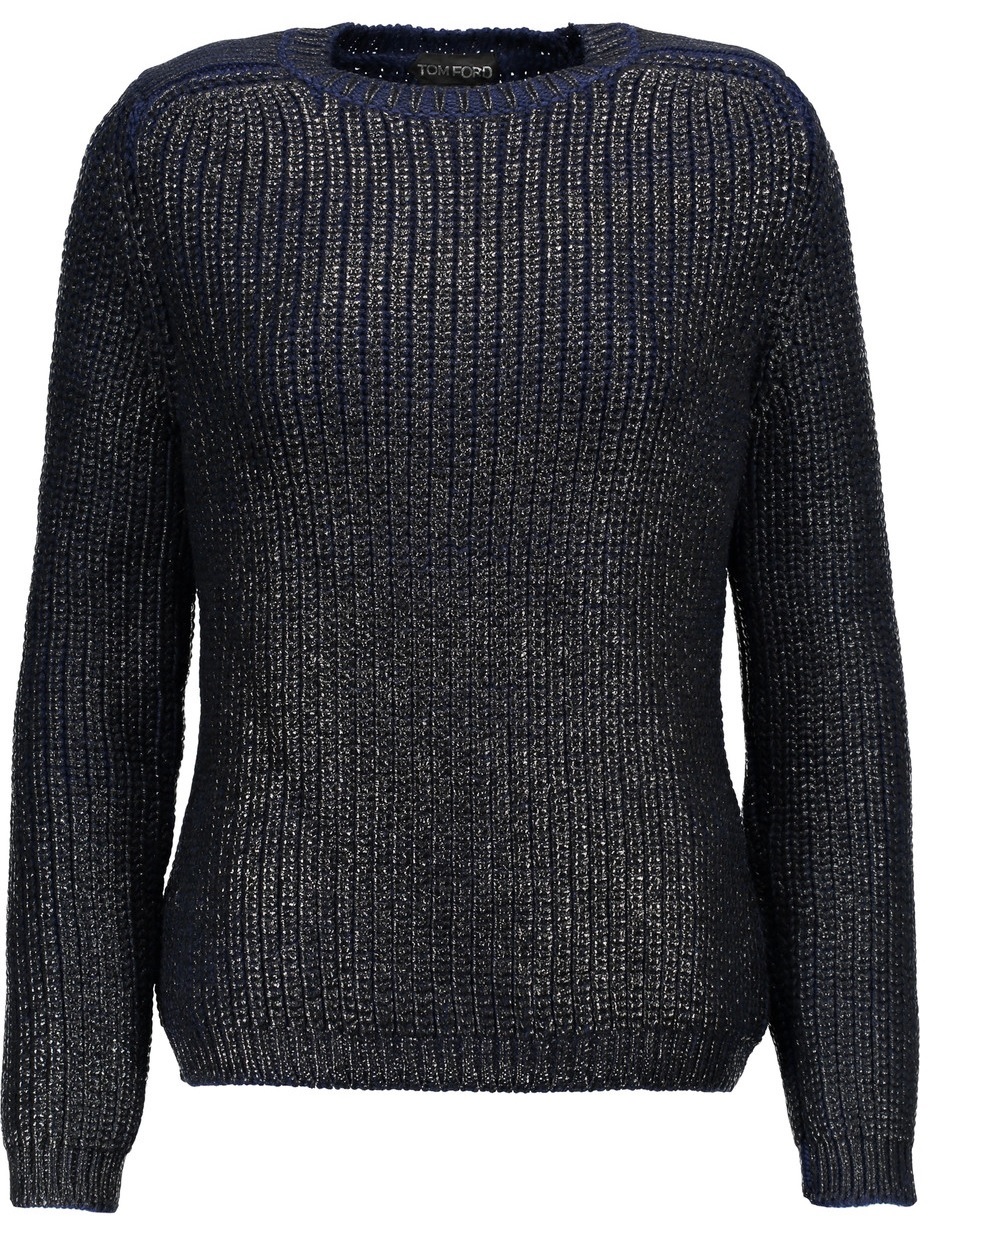 tomfordsweater2